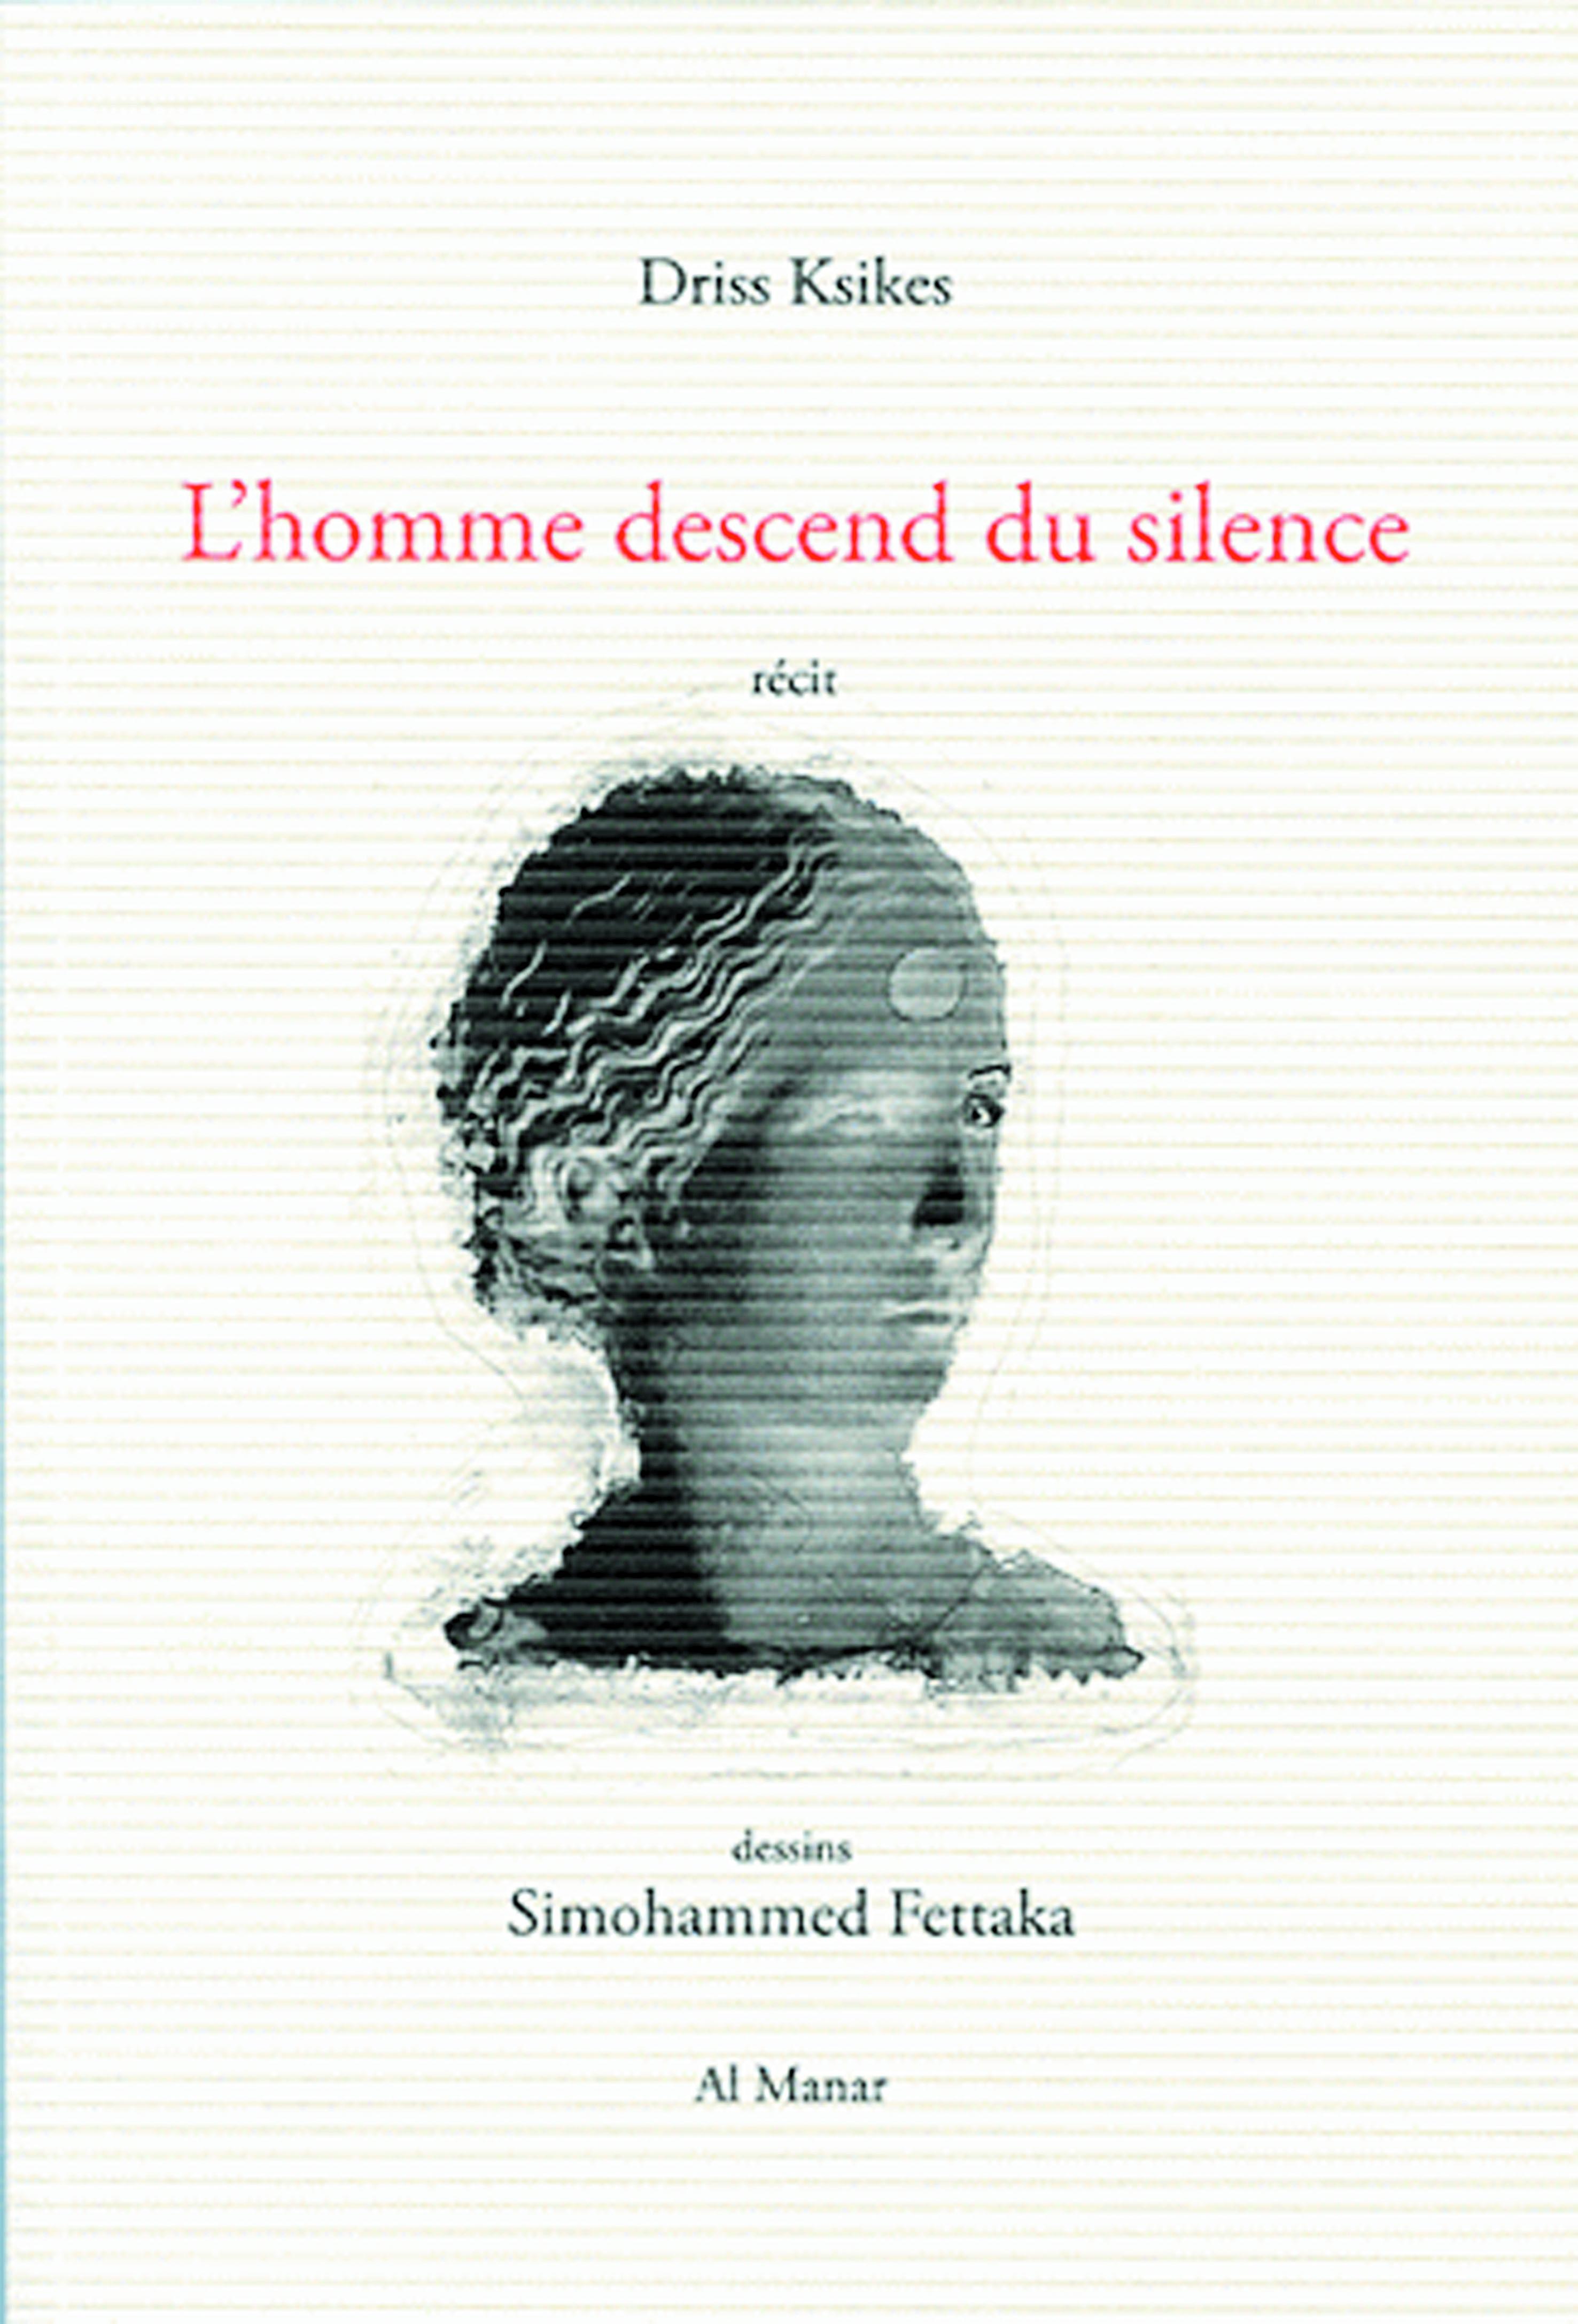 La déterritorialisation de l’écriture dans «L’homme descend  du silence»  de Driss Ksikes